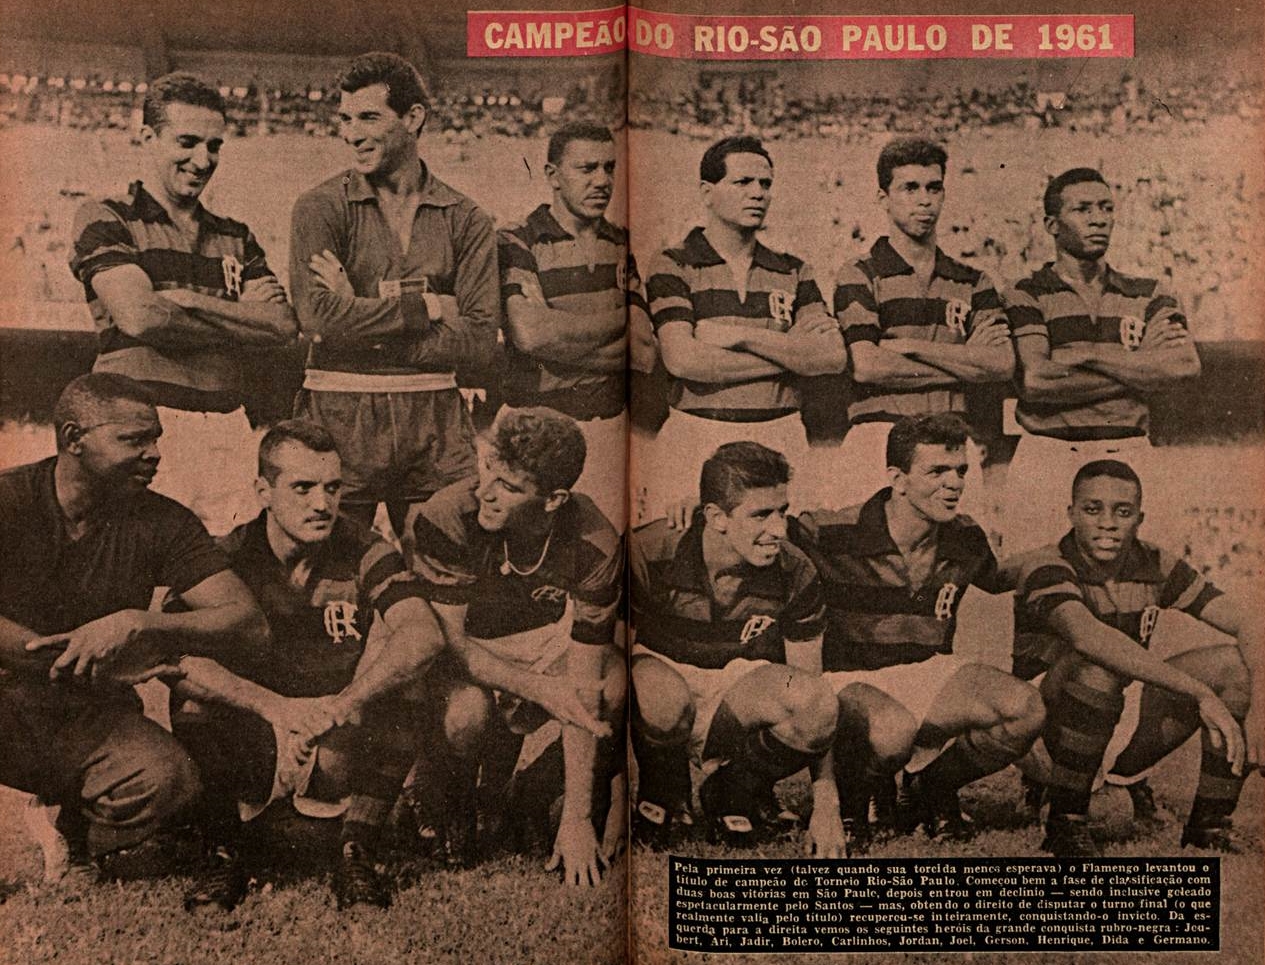 PLACAR lança revista-pôster do São Paulo, campeão inédito da Copa do Brasil  - Placar - O futebol sem barreiras para você